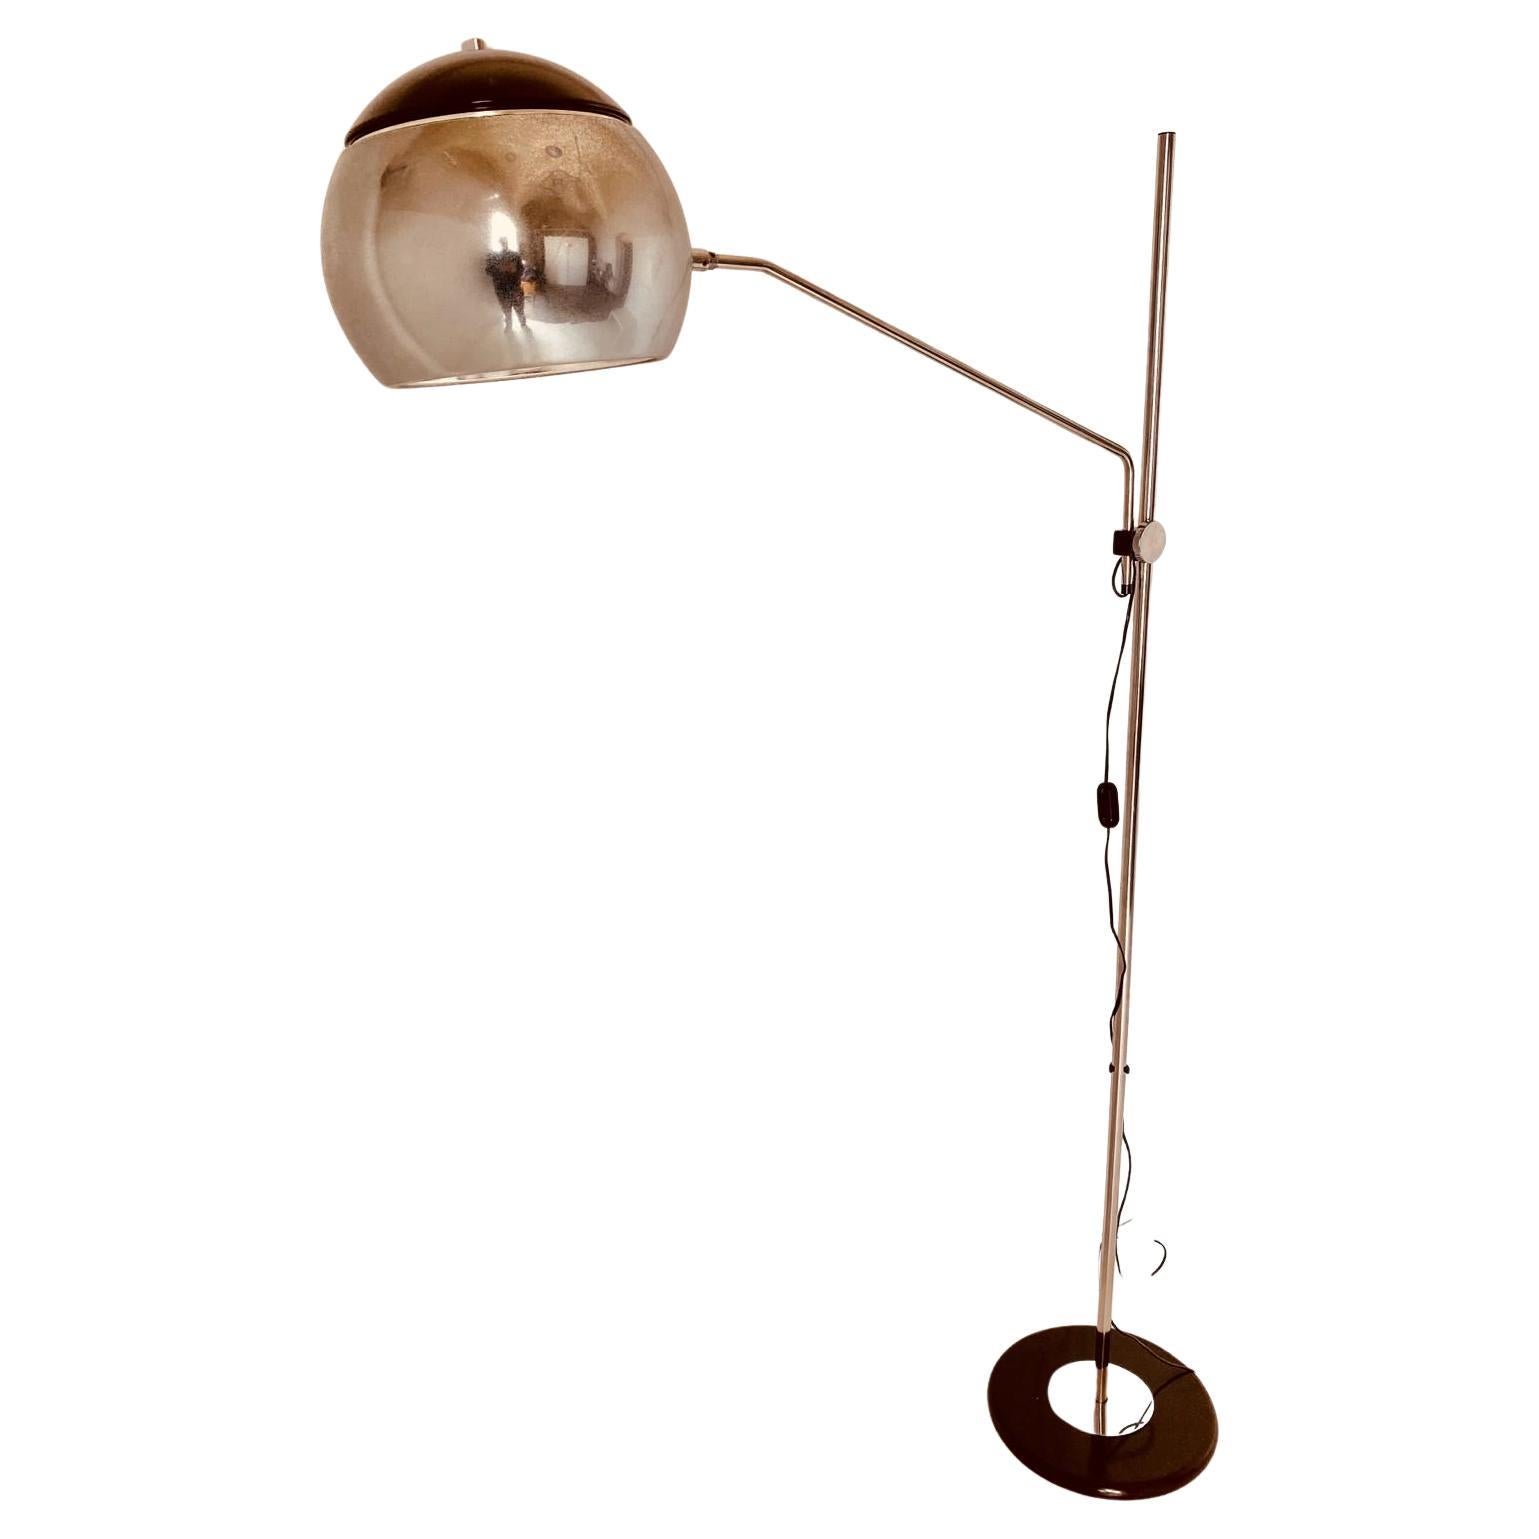 Eine Vintage-Stehlampe aus den 1960er Jahren mit einem Sockel aus Bakelit und Chrom, einem verchromten Stab und einem verstellbaren Arm. Lichtpunkt aus Blech. In sehr gutem Zustand mit einigen Zeichen der Zeit.
Die Verchromung wurde poliert und die